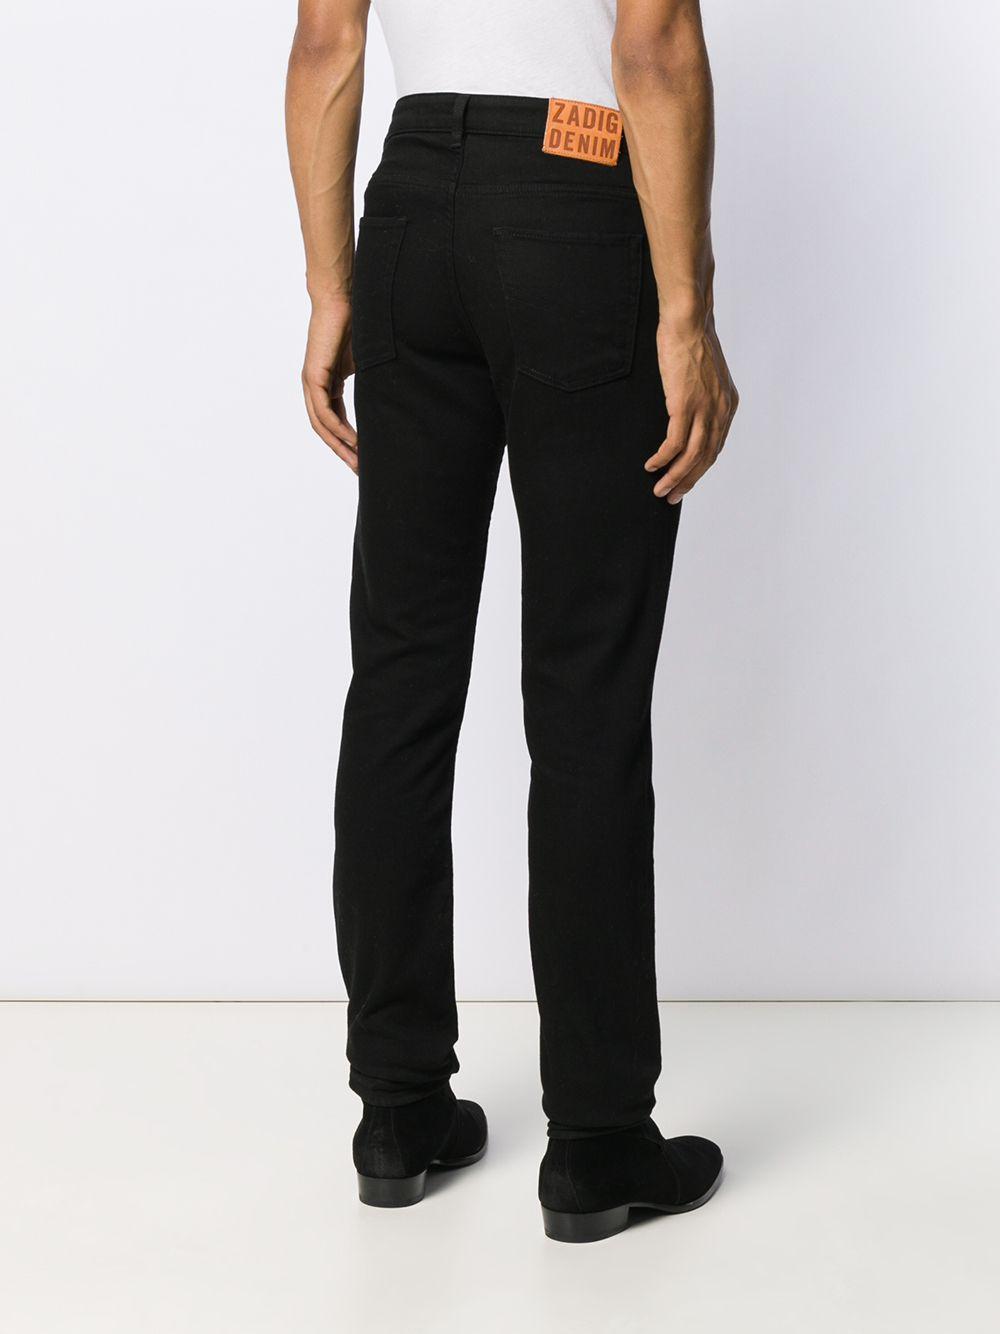 Zadig & Voltaire Denim David Slim Jeans in Black for Men - Lyst